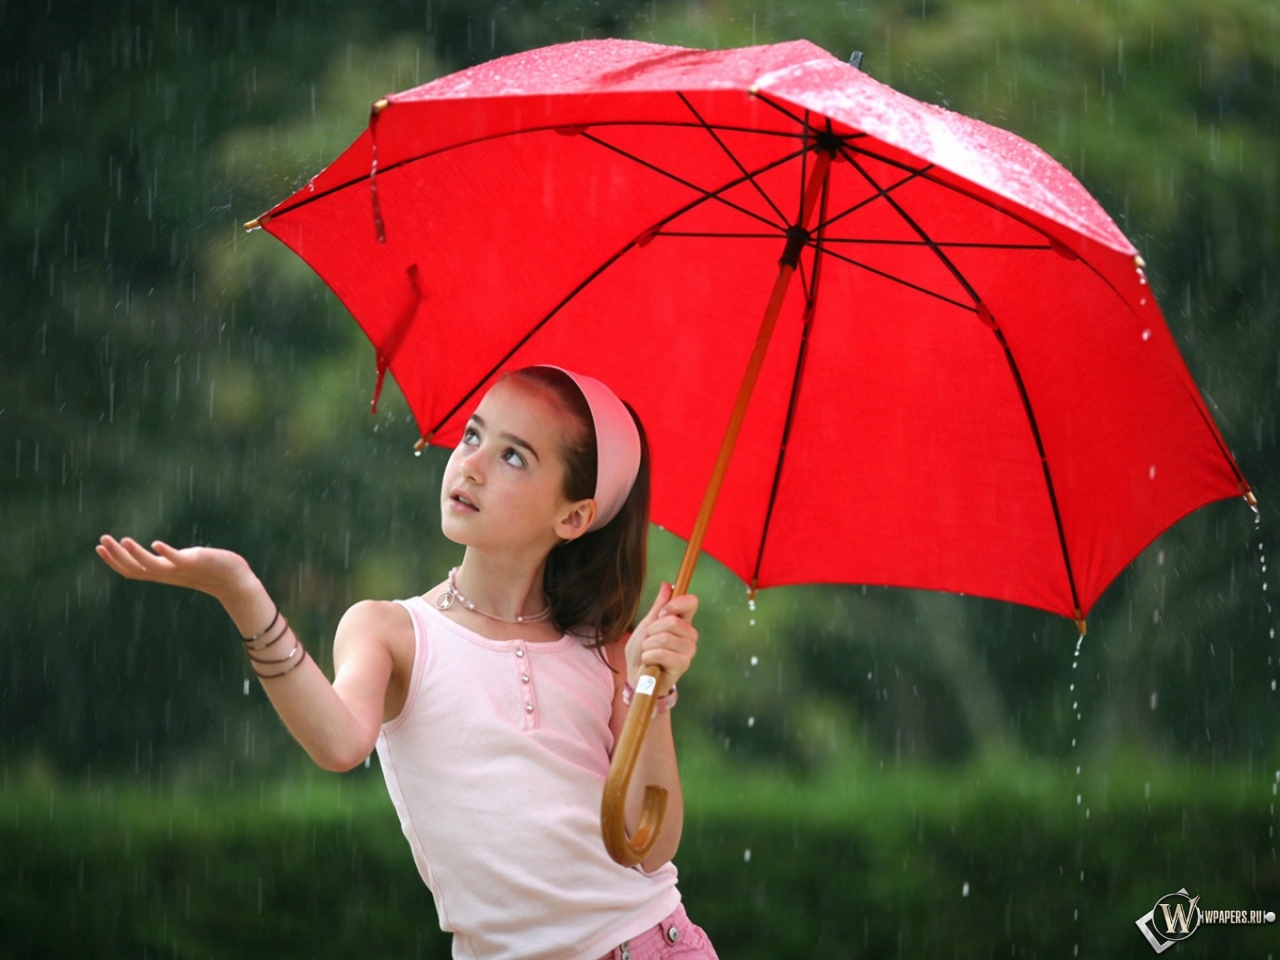 Девушка с зонтом фото